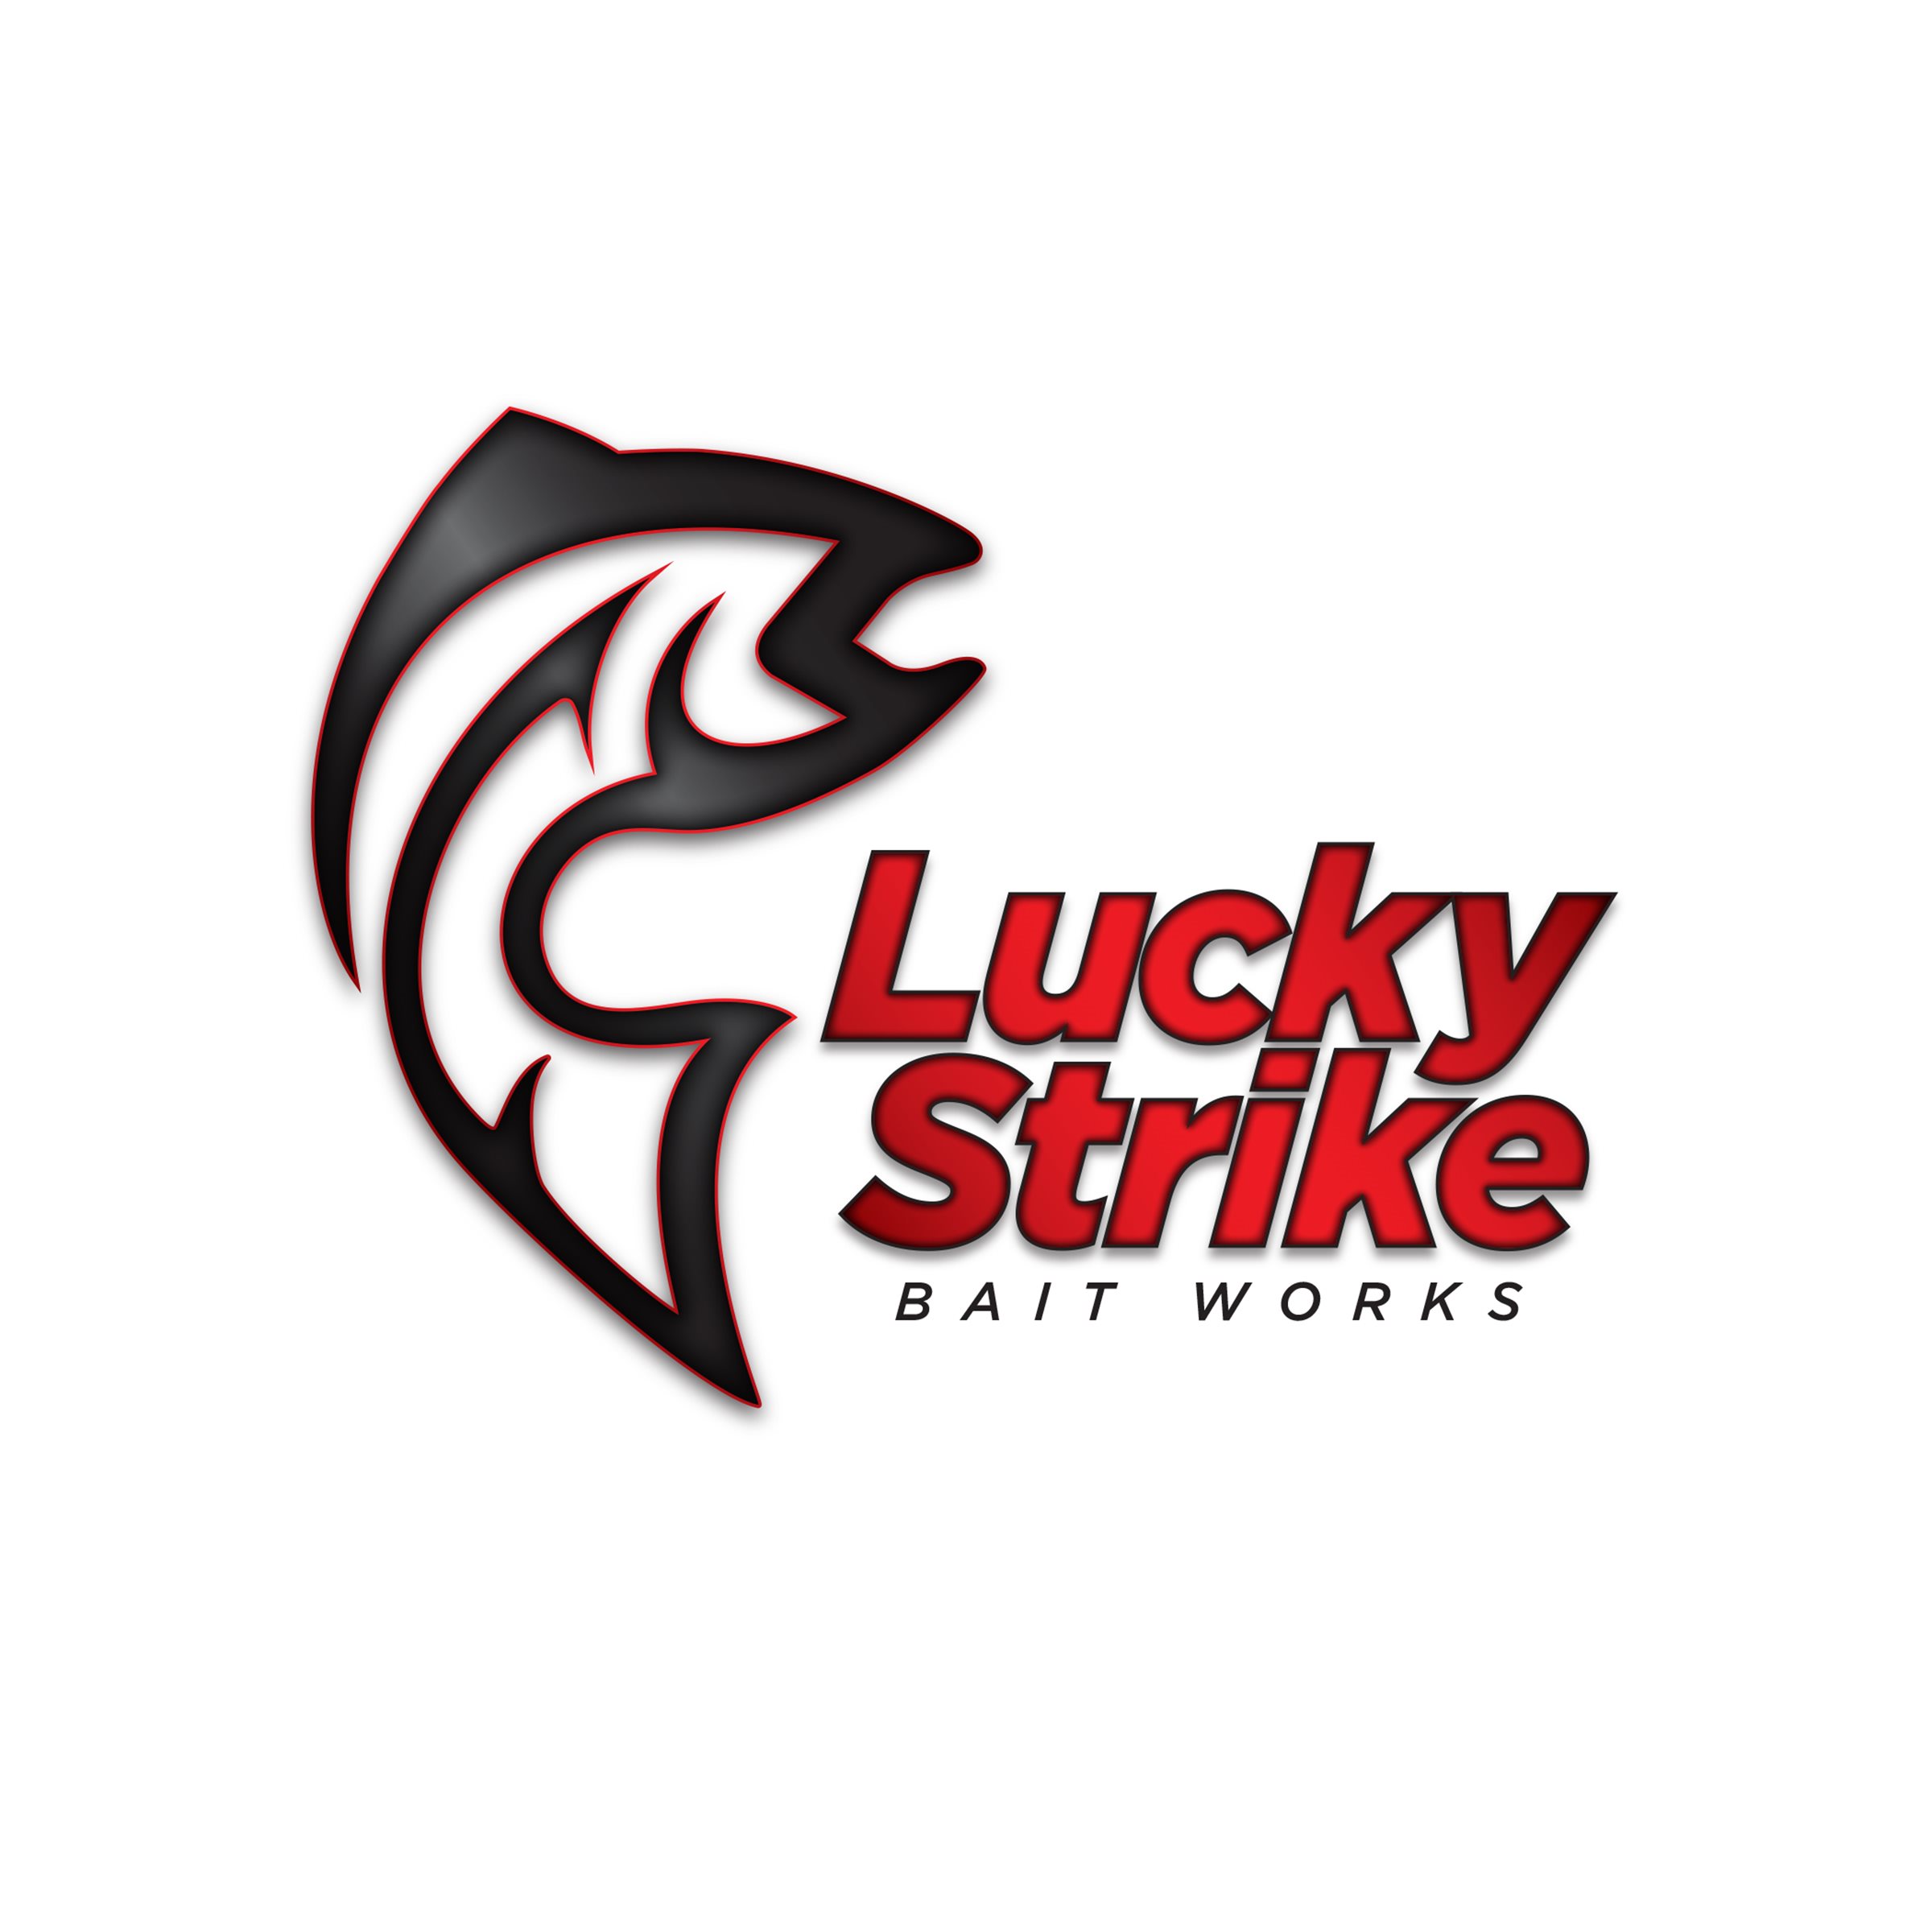 A_Luckystrike-logo